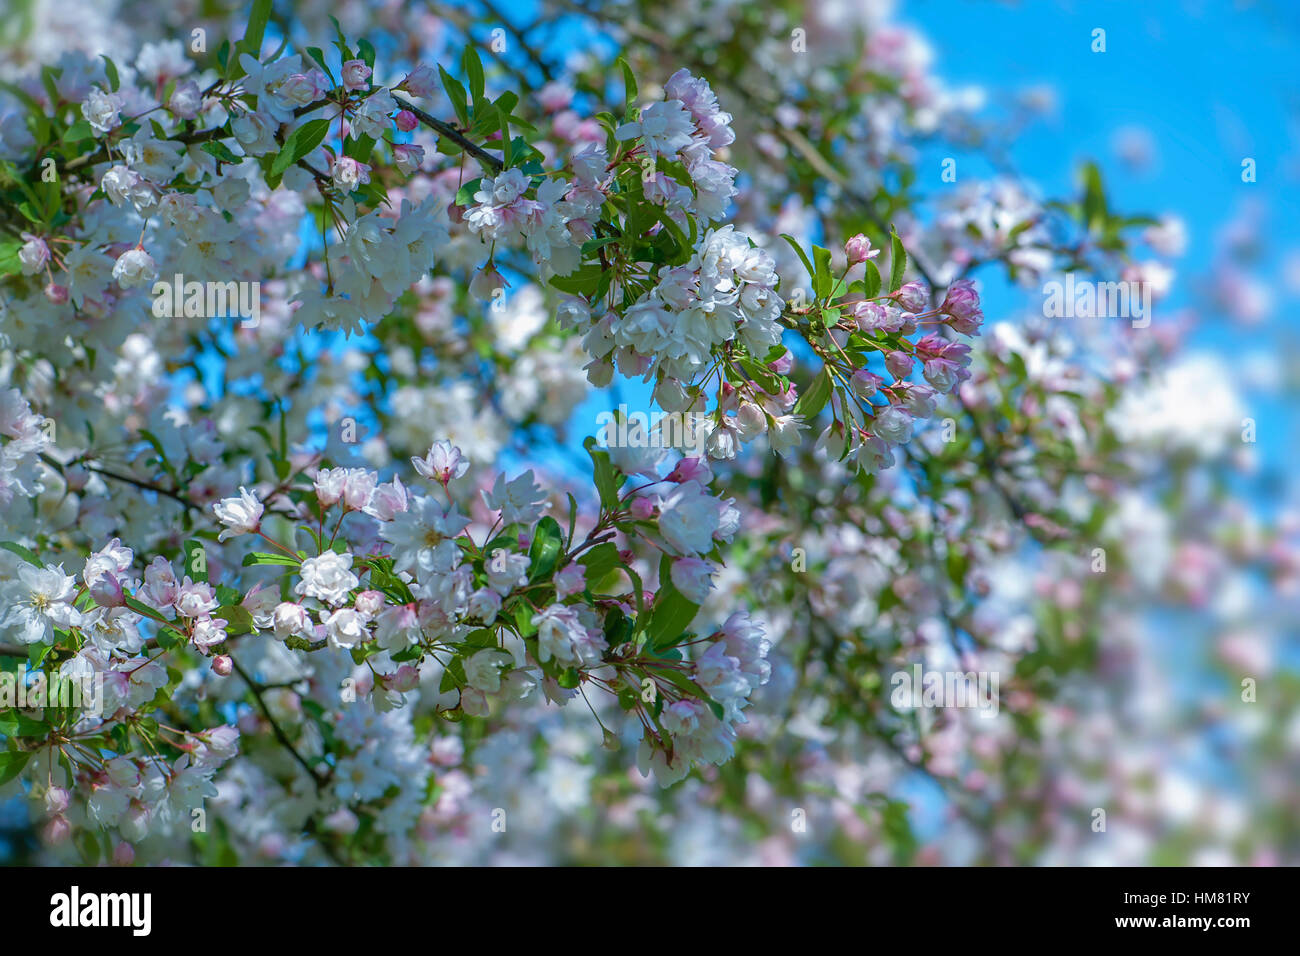 Molla delicato bianco e rosa sbocciare dei fiori di Crab Apple tree Malus × micromalus immagine presa contro un cielo blu Foto Stock